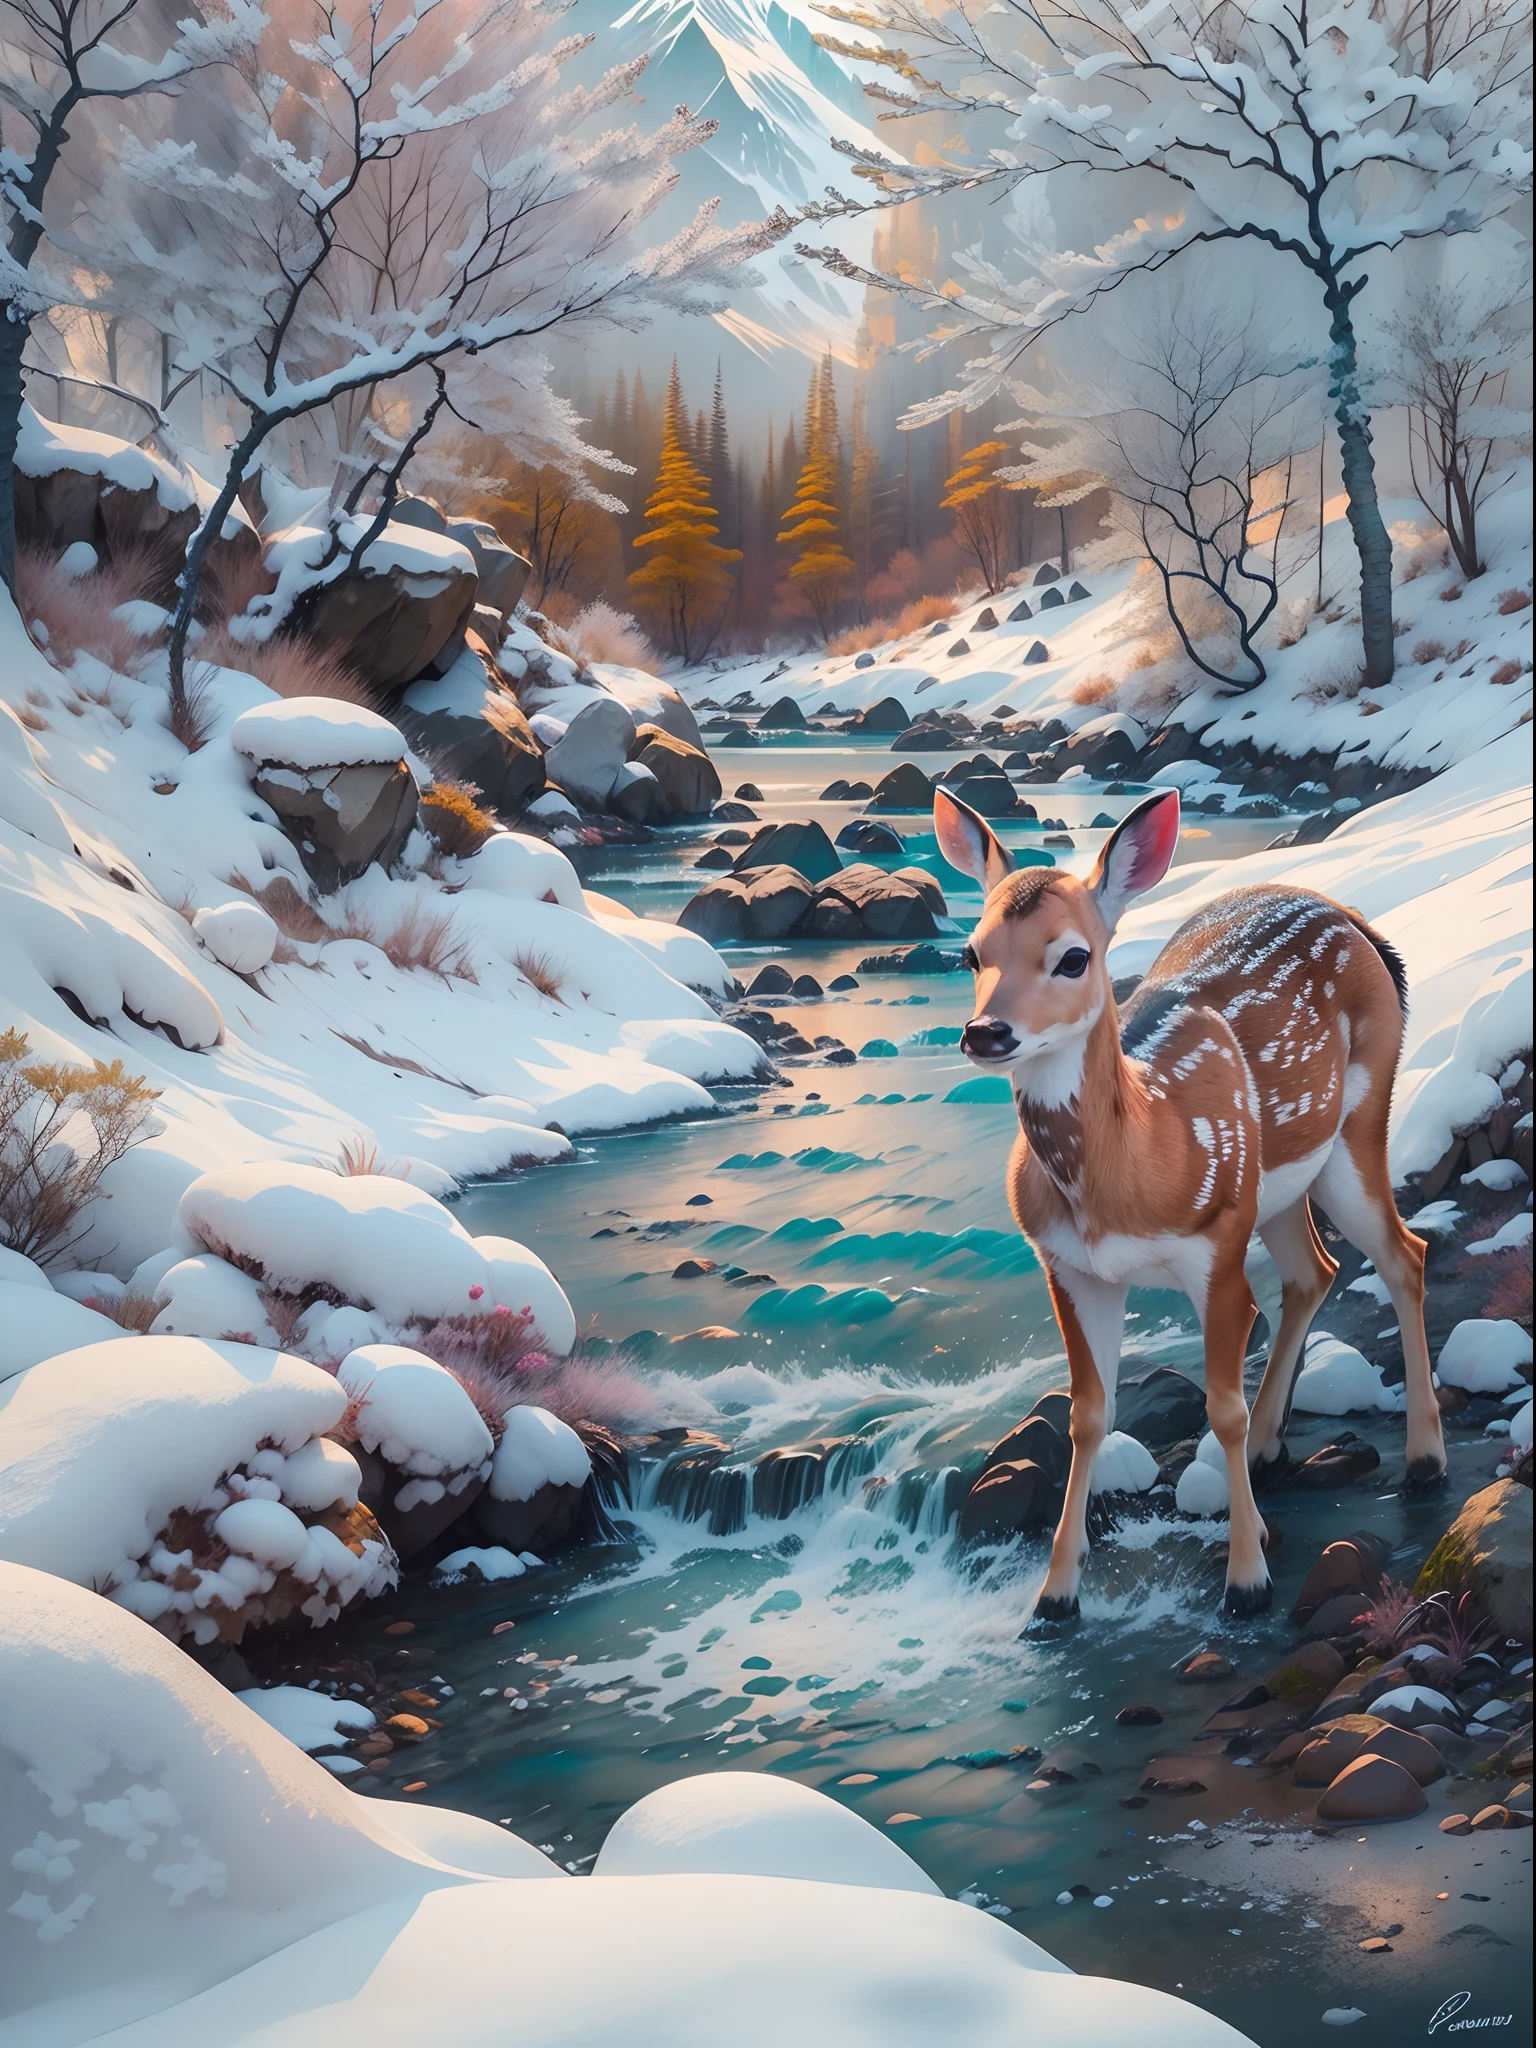 (最好的质量, 照片般真实:1.2), 自然,美丽的风景， 融化冰雪, （山涧溪流，清流）,远处有一只小鹿， 杰作:1.23, 摄影.